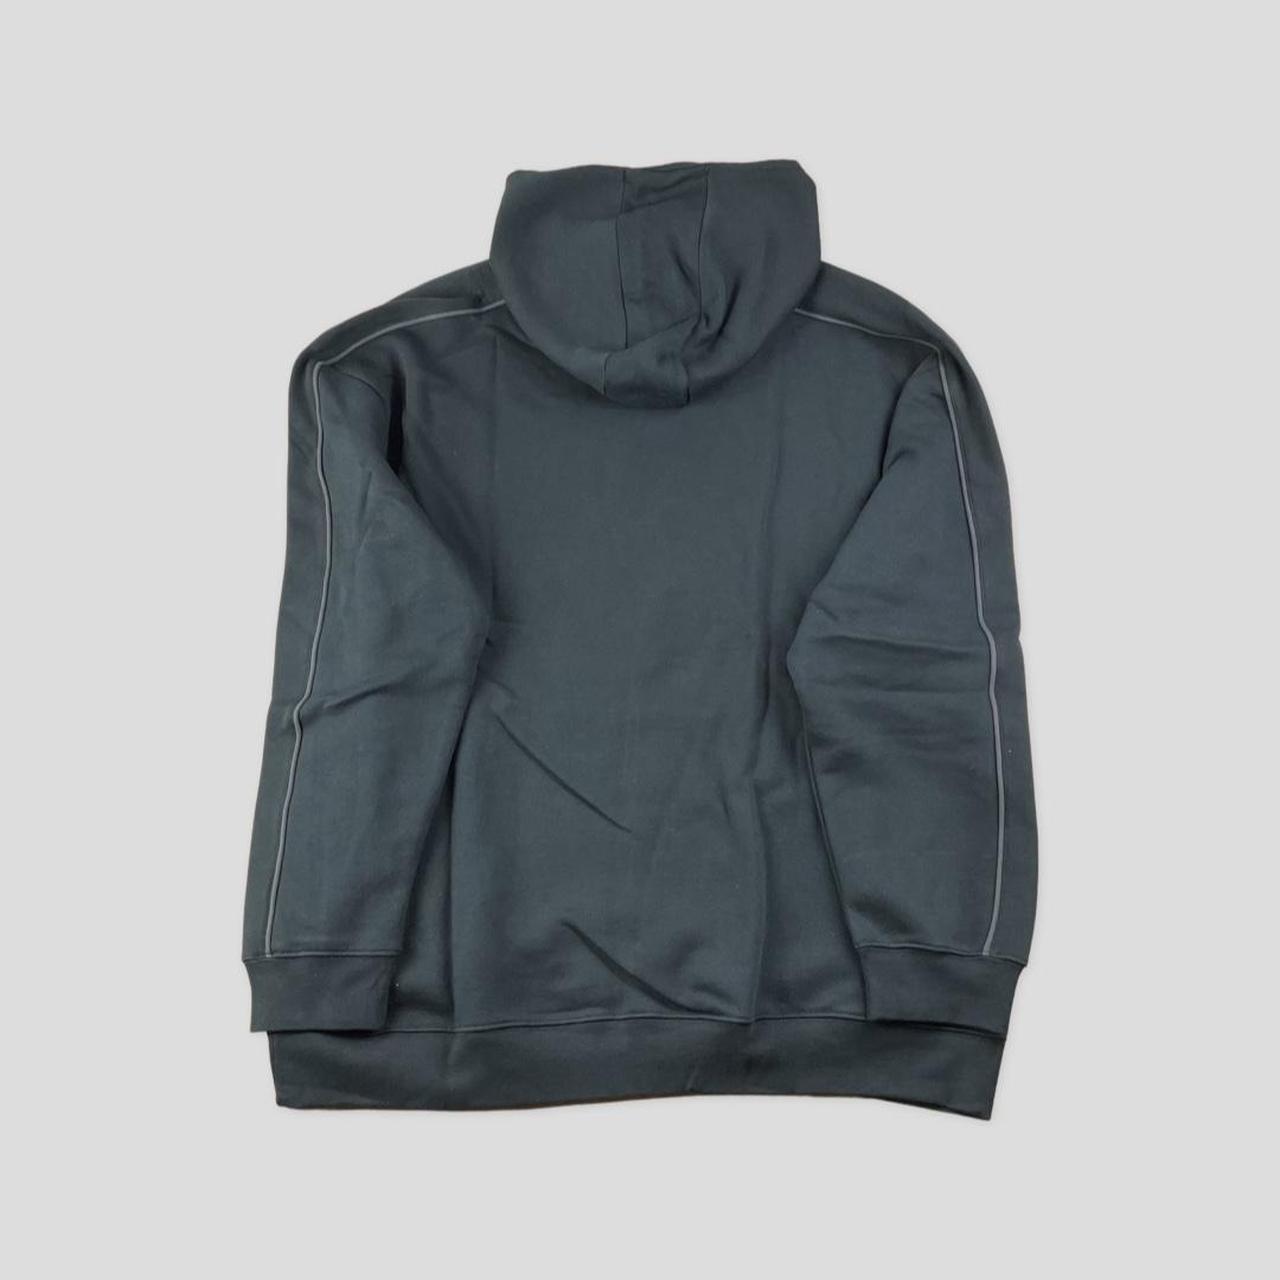 Vintage Nike black hoodie size XL brand new with... - Depop